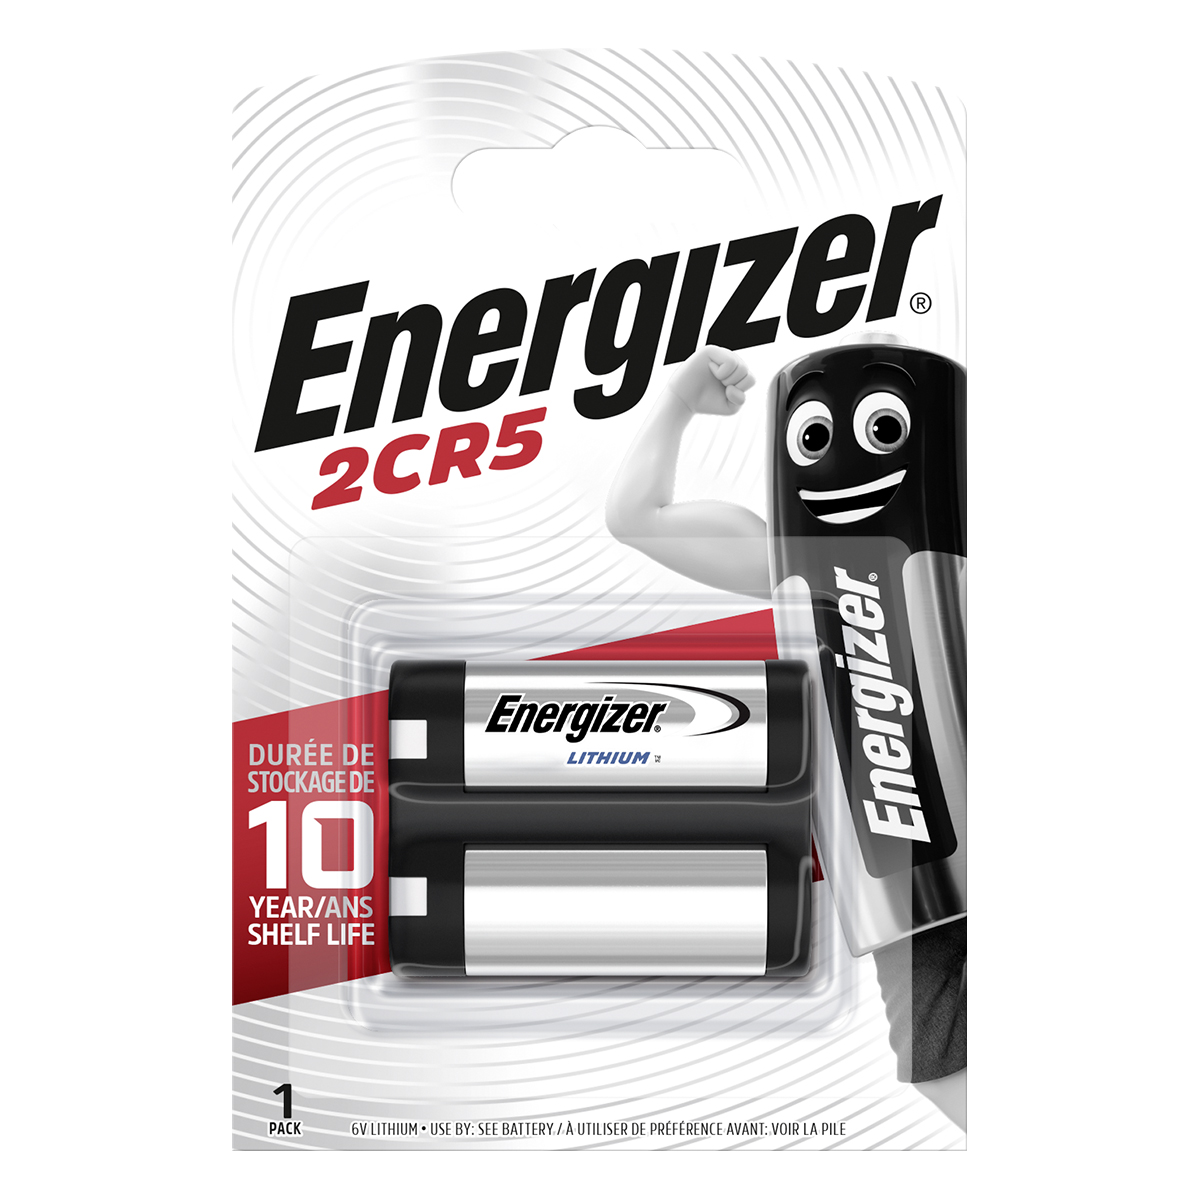 Energizer 1 Blister Foto Batterij 6 Volt Lithium 2CR5